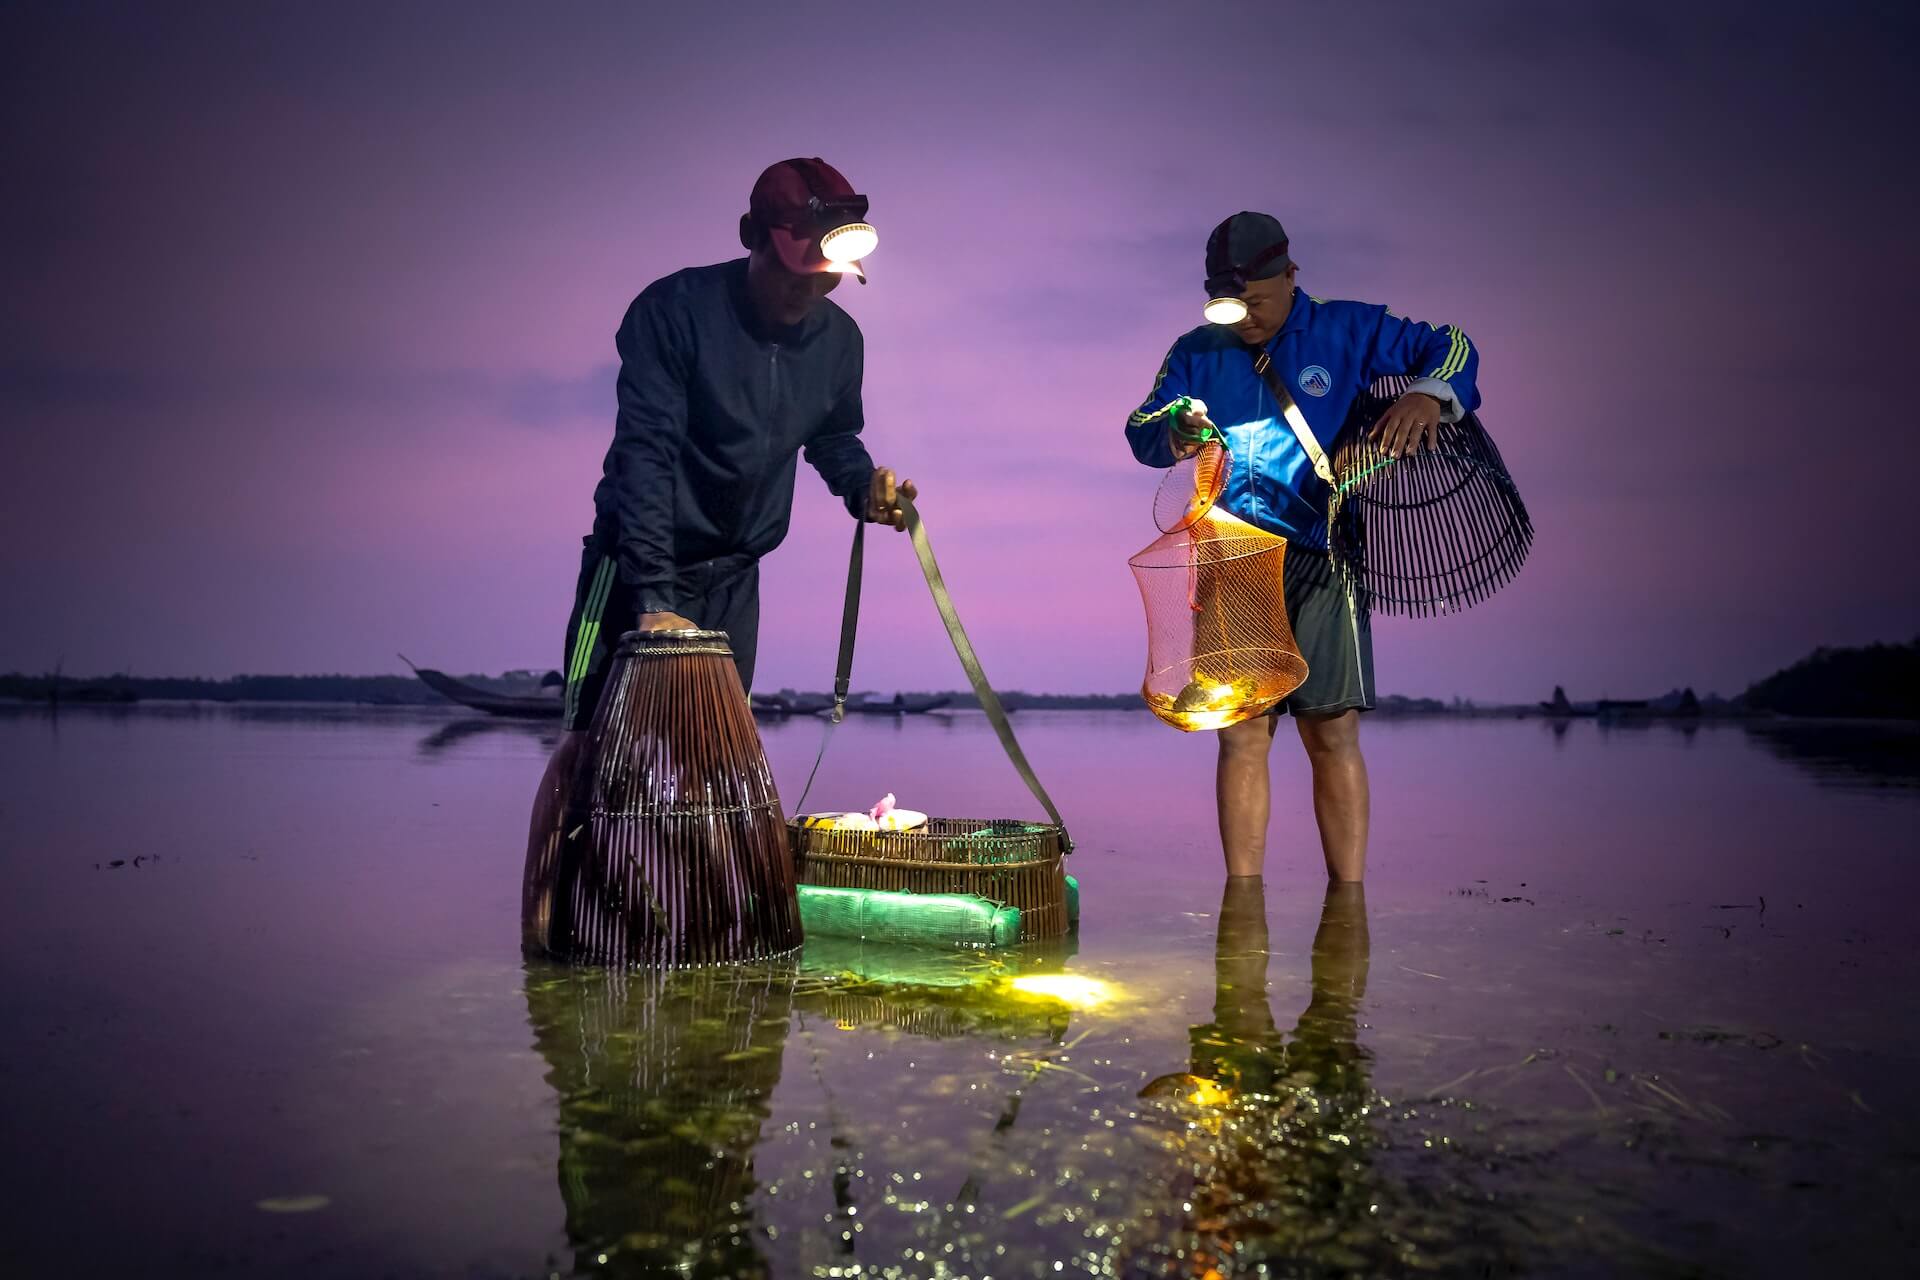 Men catching fish at night time